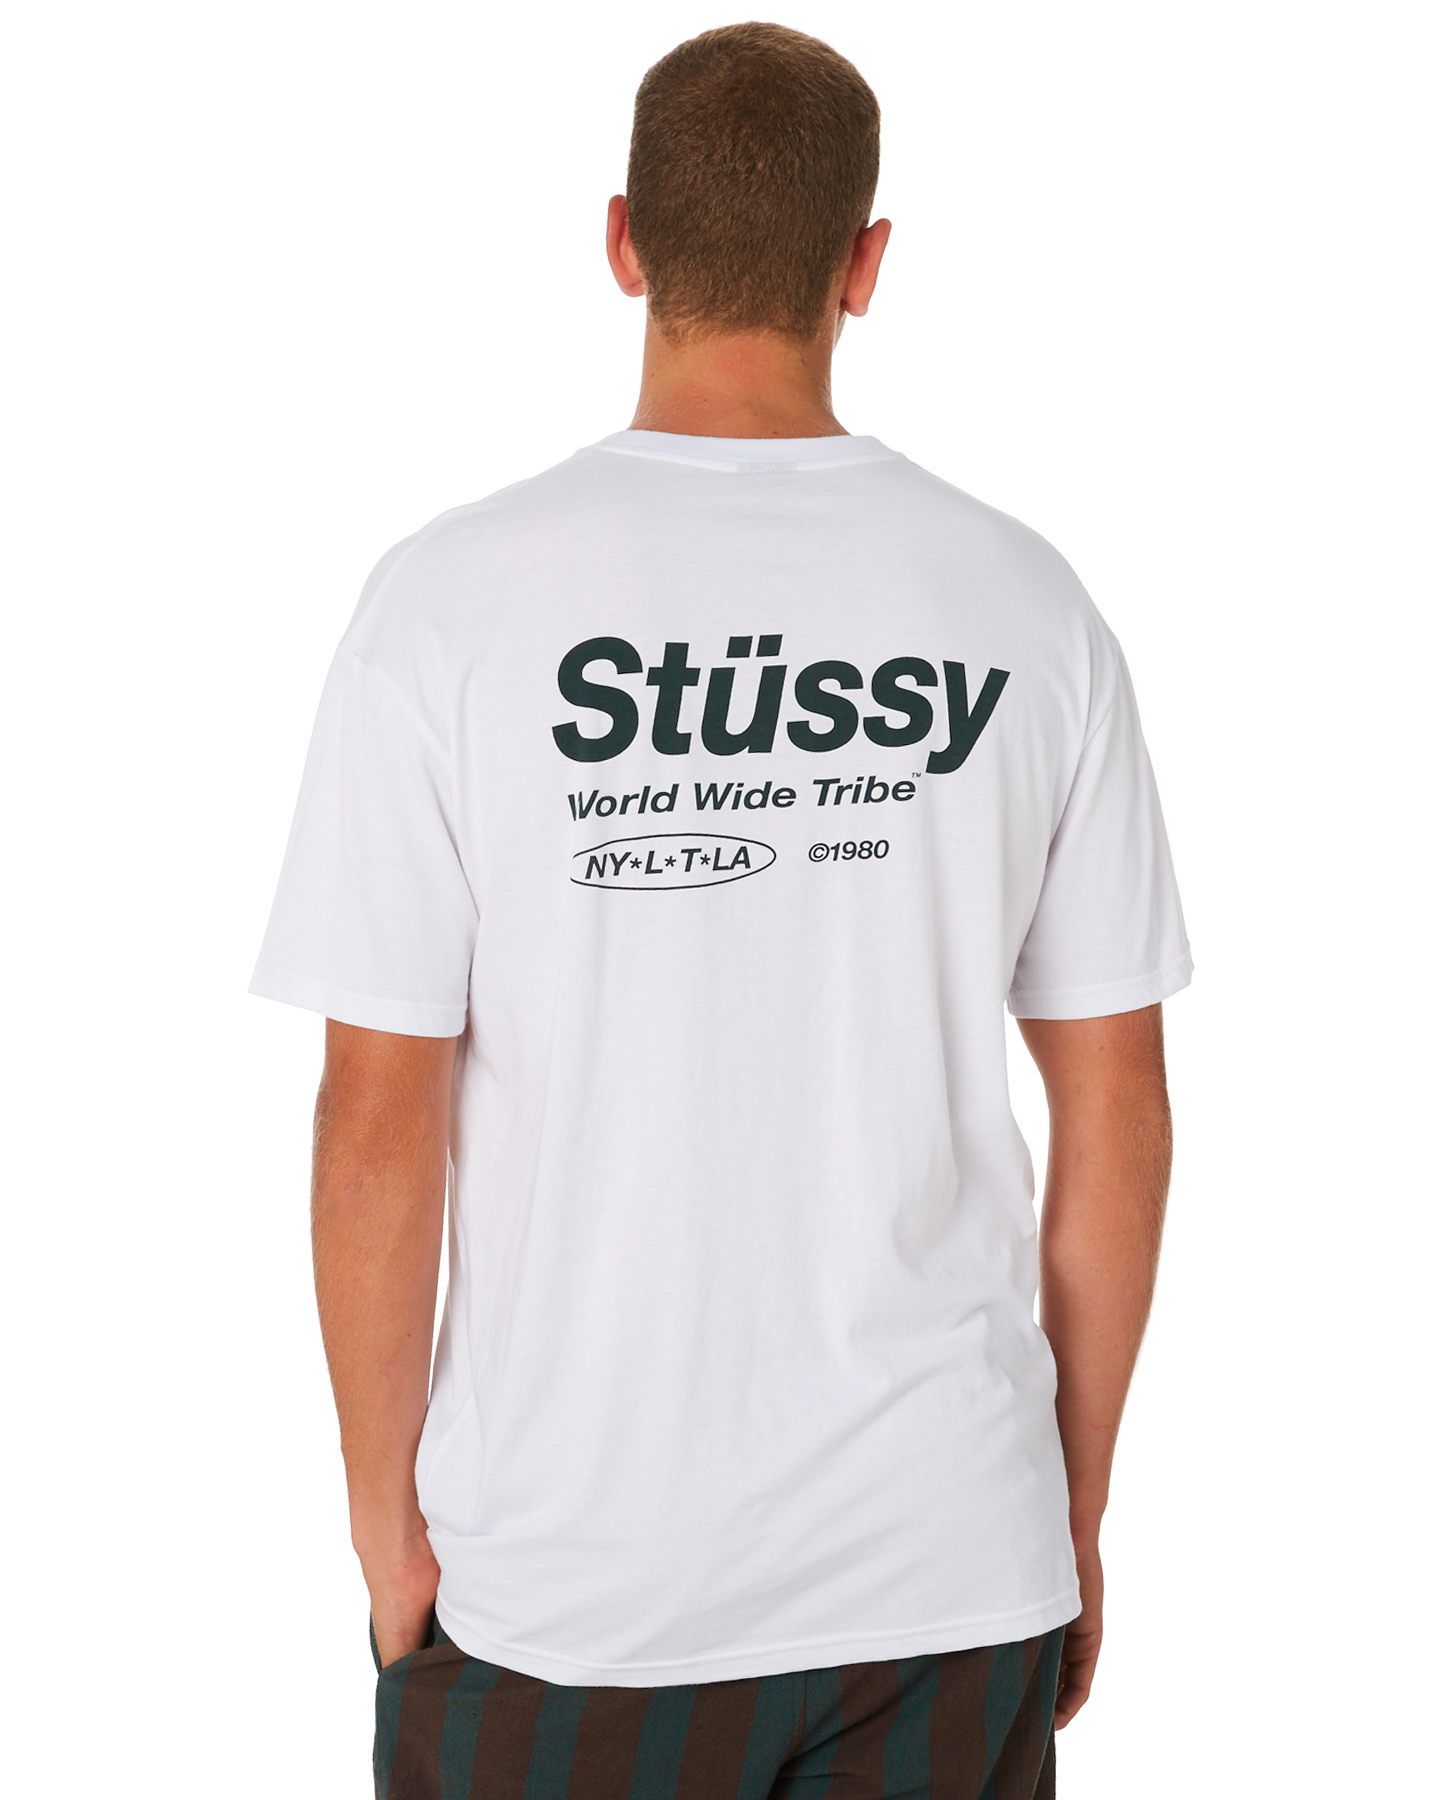 Stussy Shirt Size Chart